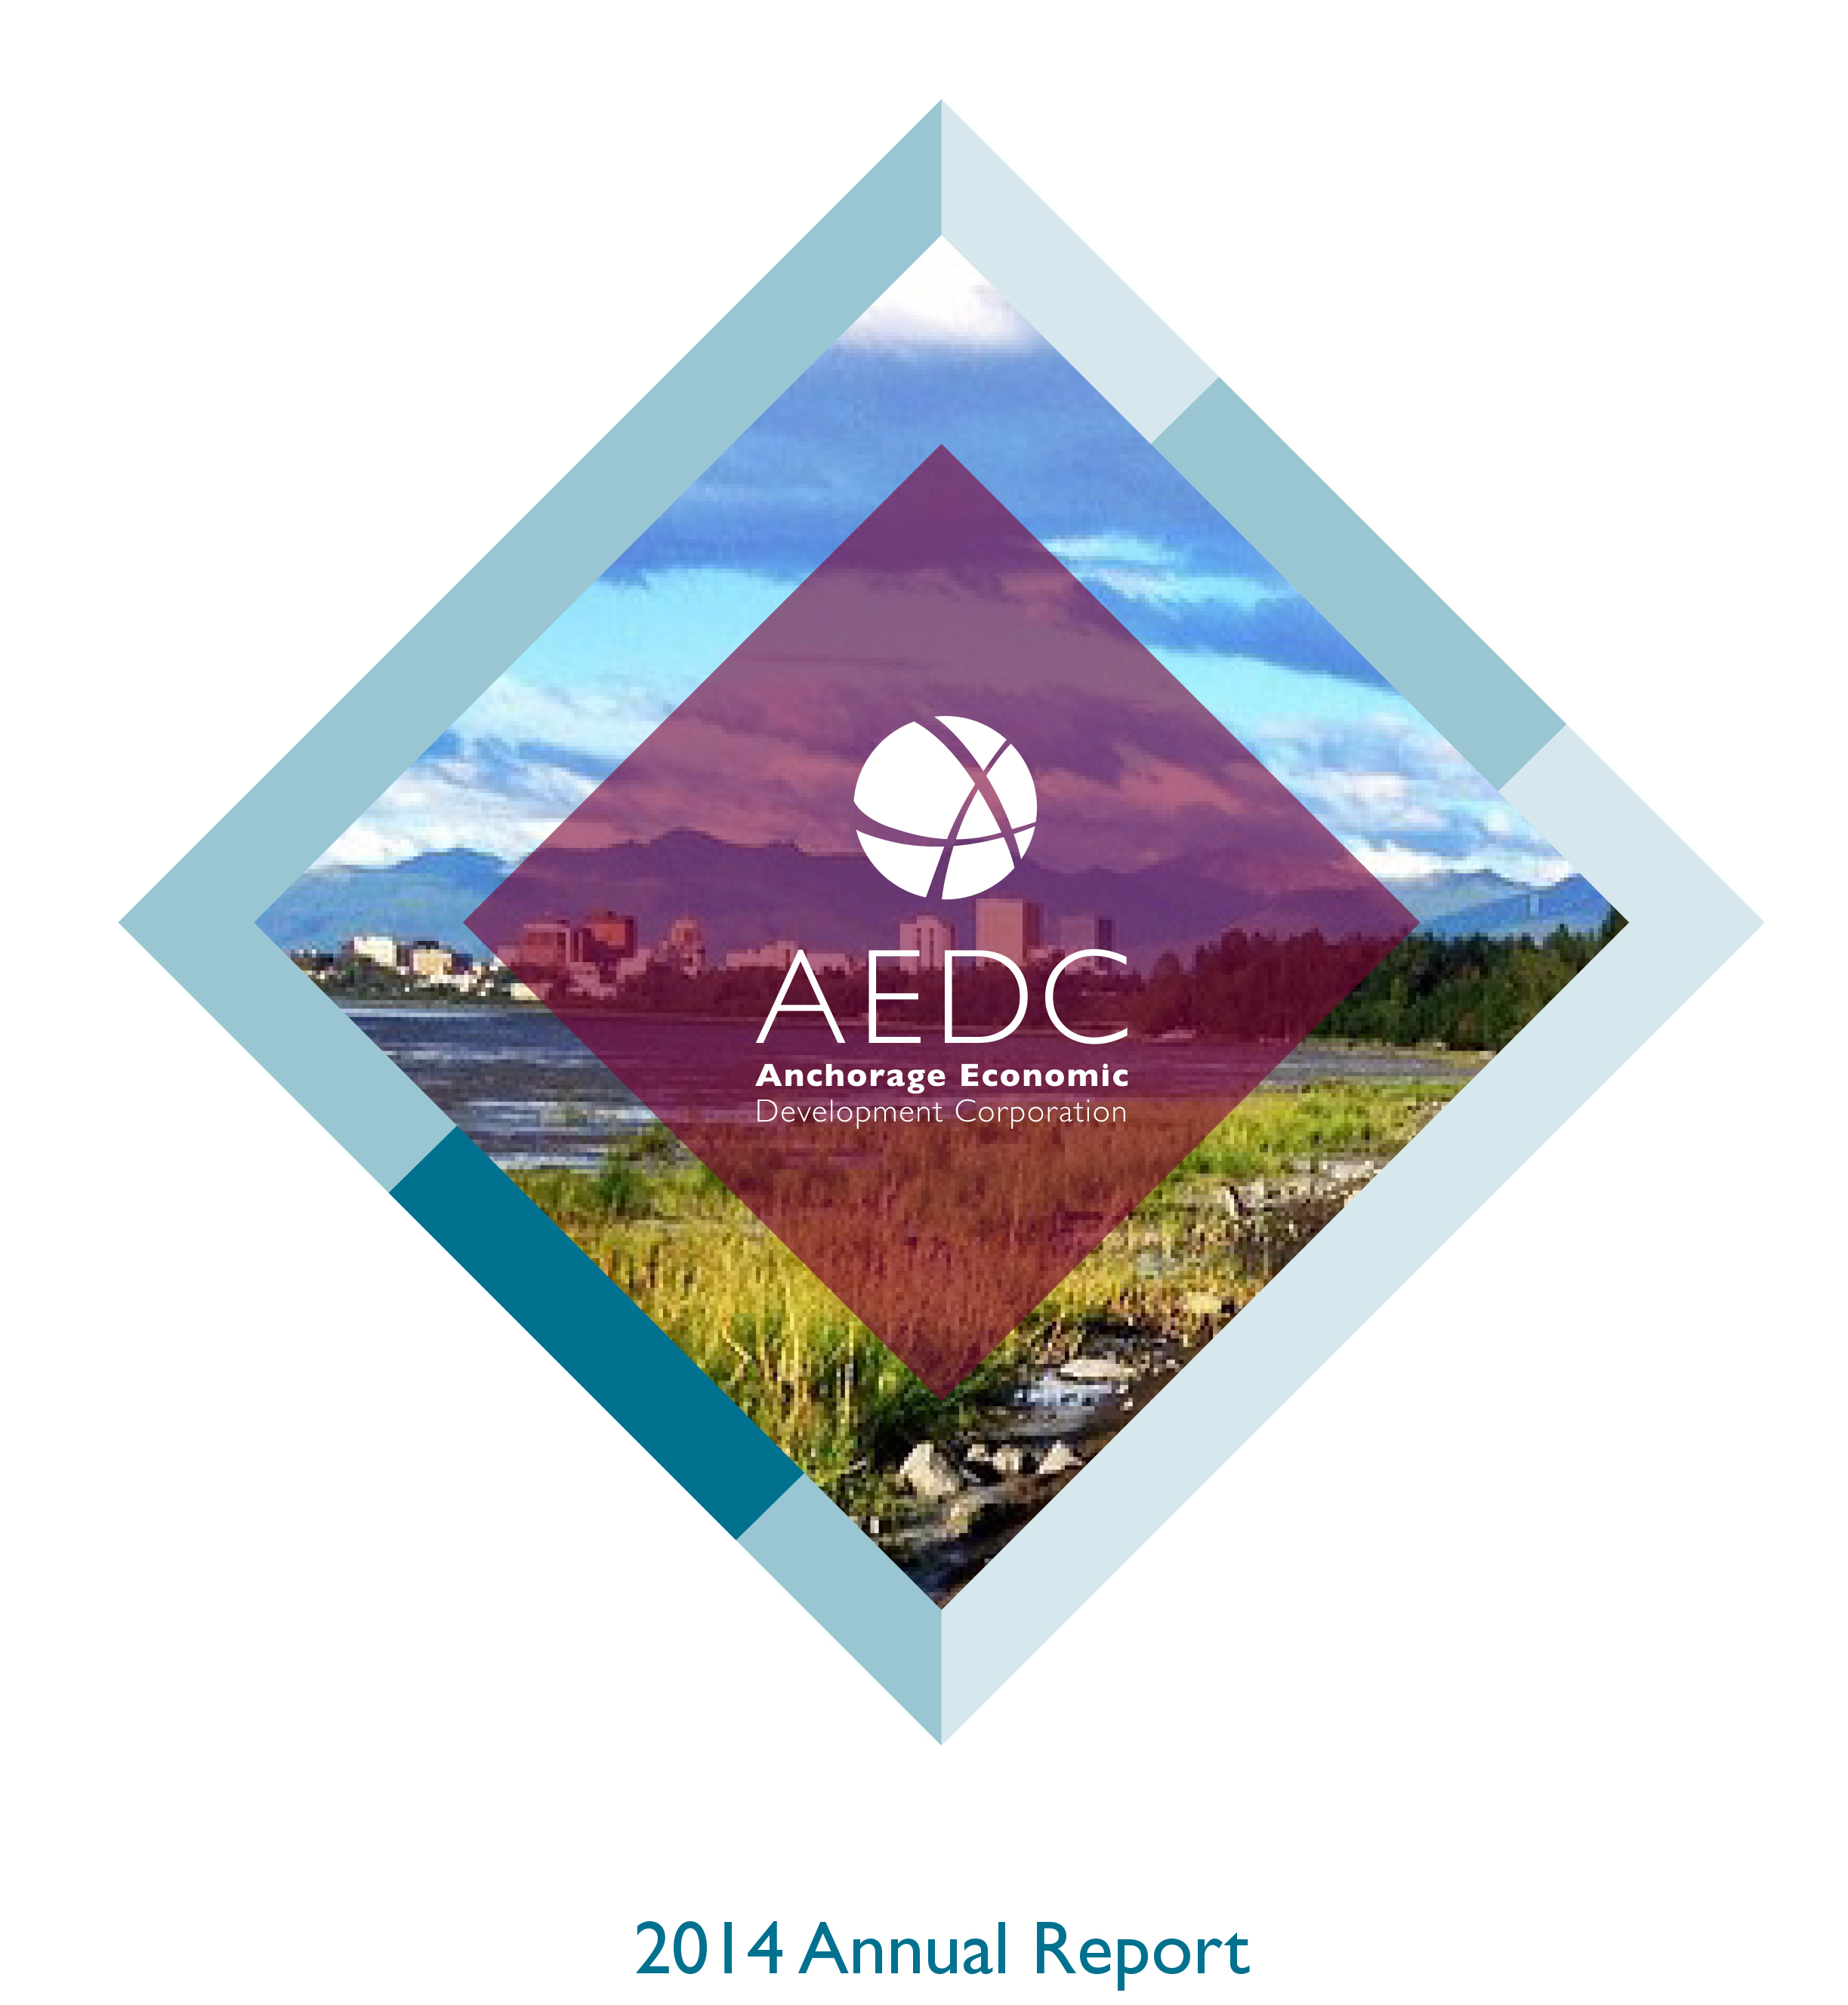 AEDC Annual Report: 2014